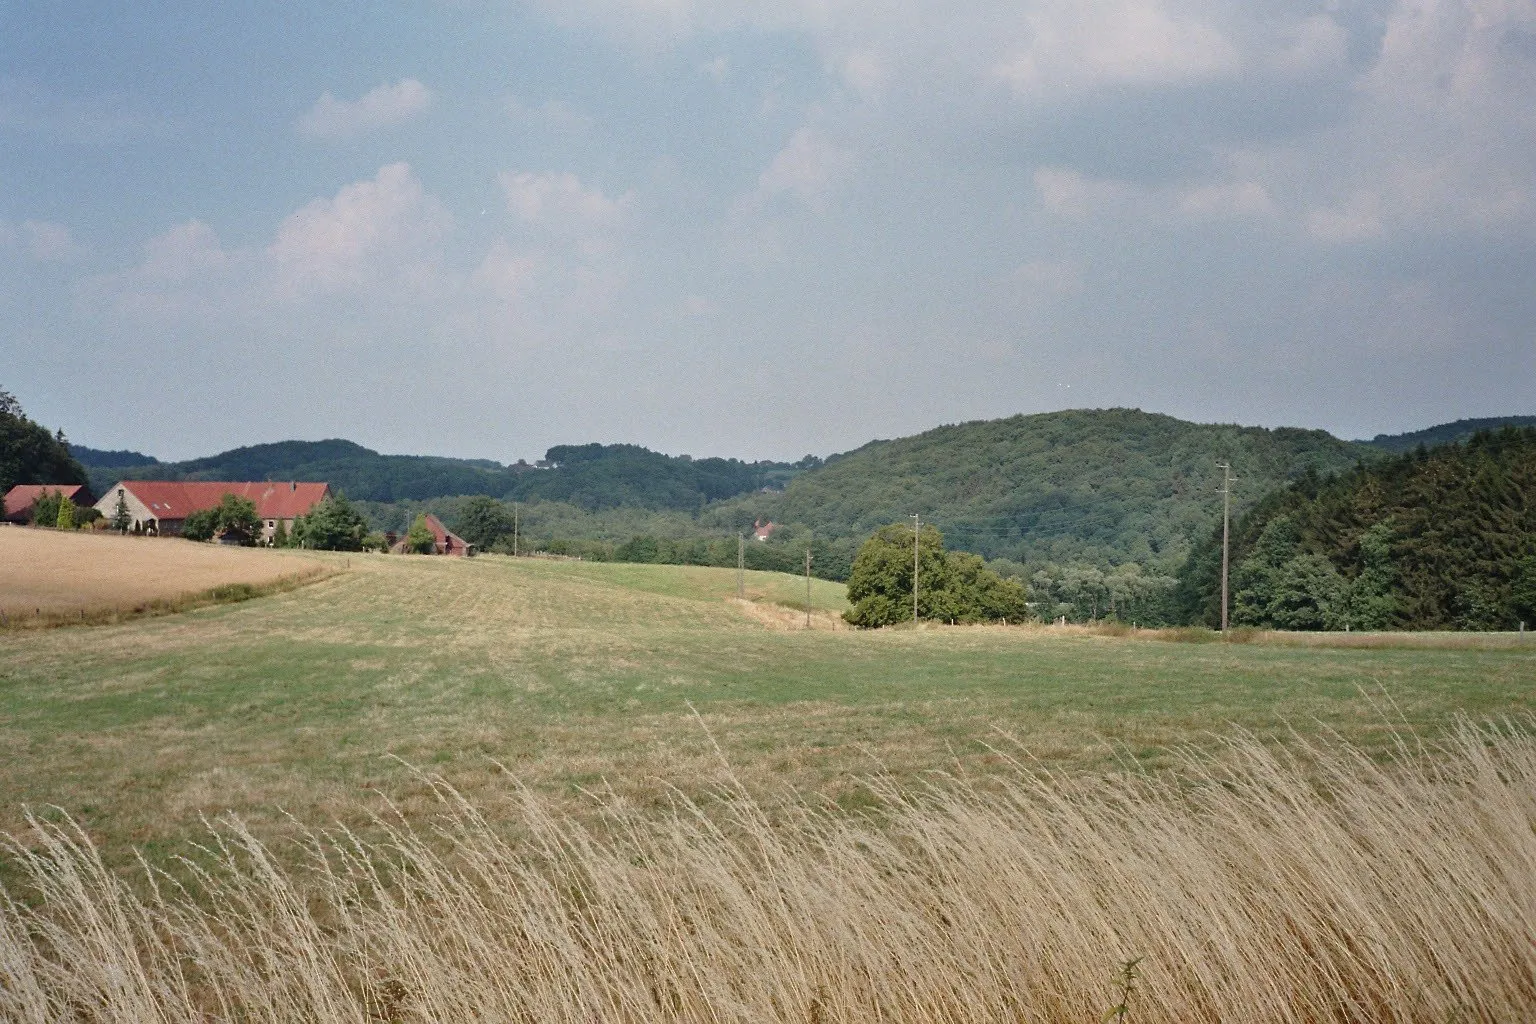 Photo showing: Landschaft im Bereich des Hammertals in Niedersprockhövel, Deutschland; Blick von der Hiddinghauser Straße (Hausnr. 16) am Nordhang des Sirrenbergs zum Hof Niedergethe (links); im Geländeeinschnitt hinter der Hof und vor den Waldhängen im Hintergrund (links Semberg/Stoltenberg in Witten-Durchholz, rechts Schultenbusch in Sprockhövel-Hiddinghausen) verlaufen die A43 und der Pleßbach (das eigentliche Hammertal; dort befindet sich auch rechts etwas außerhalb des Bildes das ehem. Hammerwerk Ibachsmühle). Der abgebildete Bereich gehört weitgehend zum Landschaftsschutzgebiet „Stüter/Sprockhövel/Hiddinghausen“; ein Teil der Wälder im Hintergrund liegt im Landschaftsschutzgebiet „Kämpen/Durchholz“.